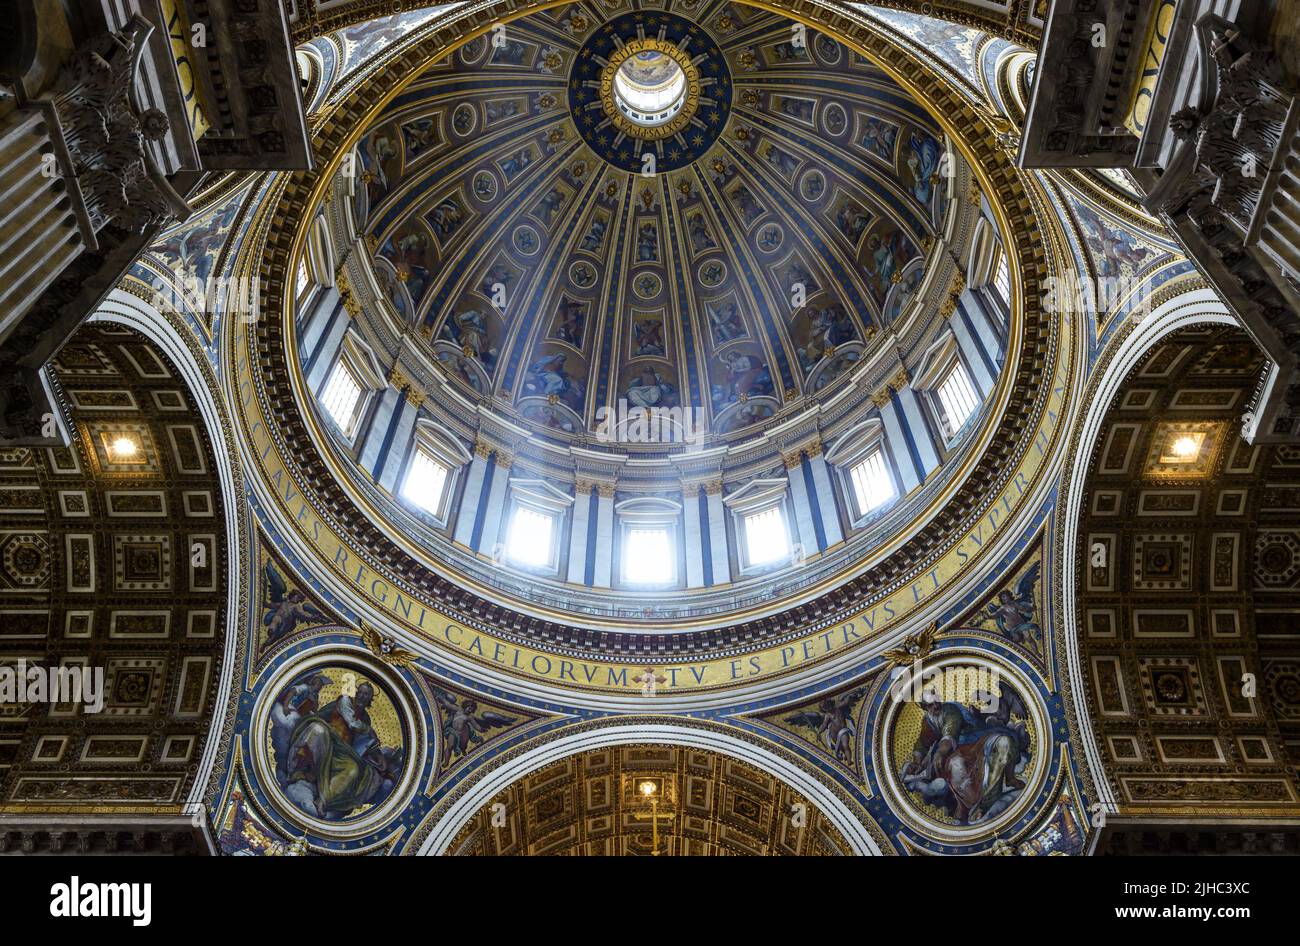 Dentro de la cúpula de la Basílica de San Pedro, Roma, Italia. La vistosa catedral de San Pedro es uno de los principales lugares de interés de Roma y la Ciudad del Vaticano. Bar de lujo Foto de stock